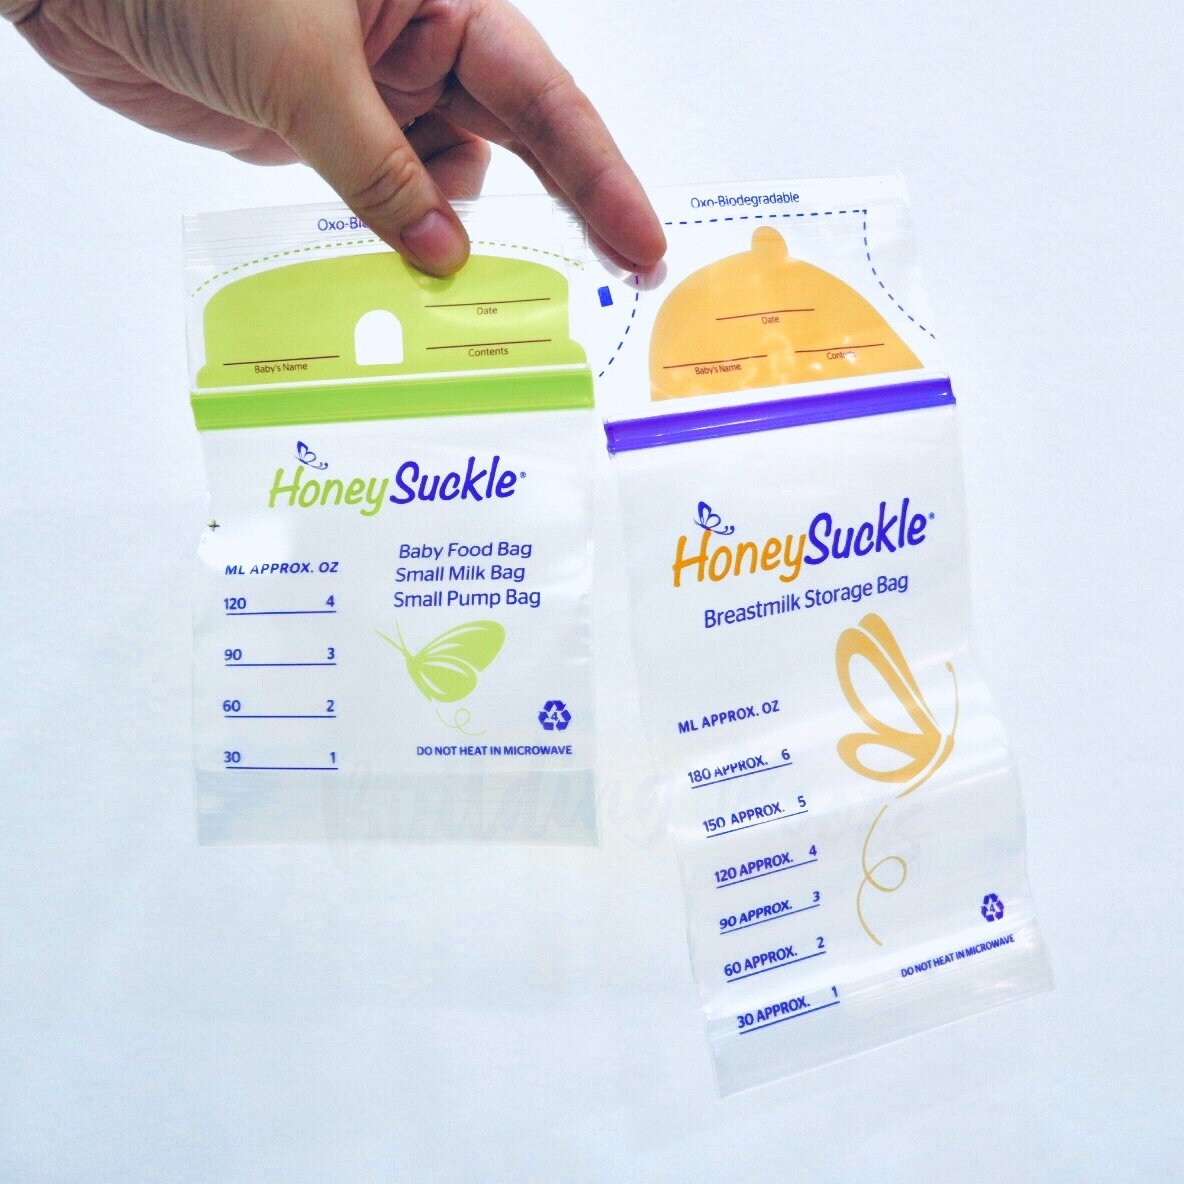 Honeysuckle Breastmilk Storage Bag (4 oz)